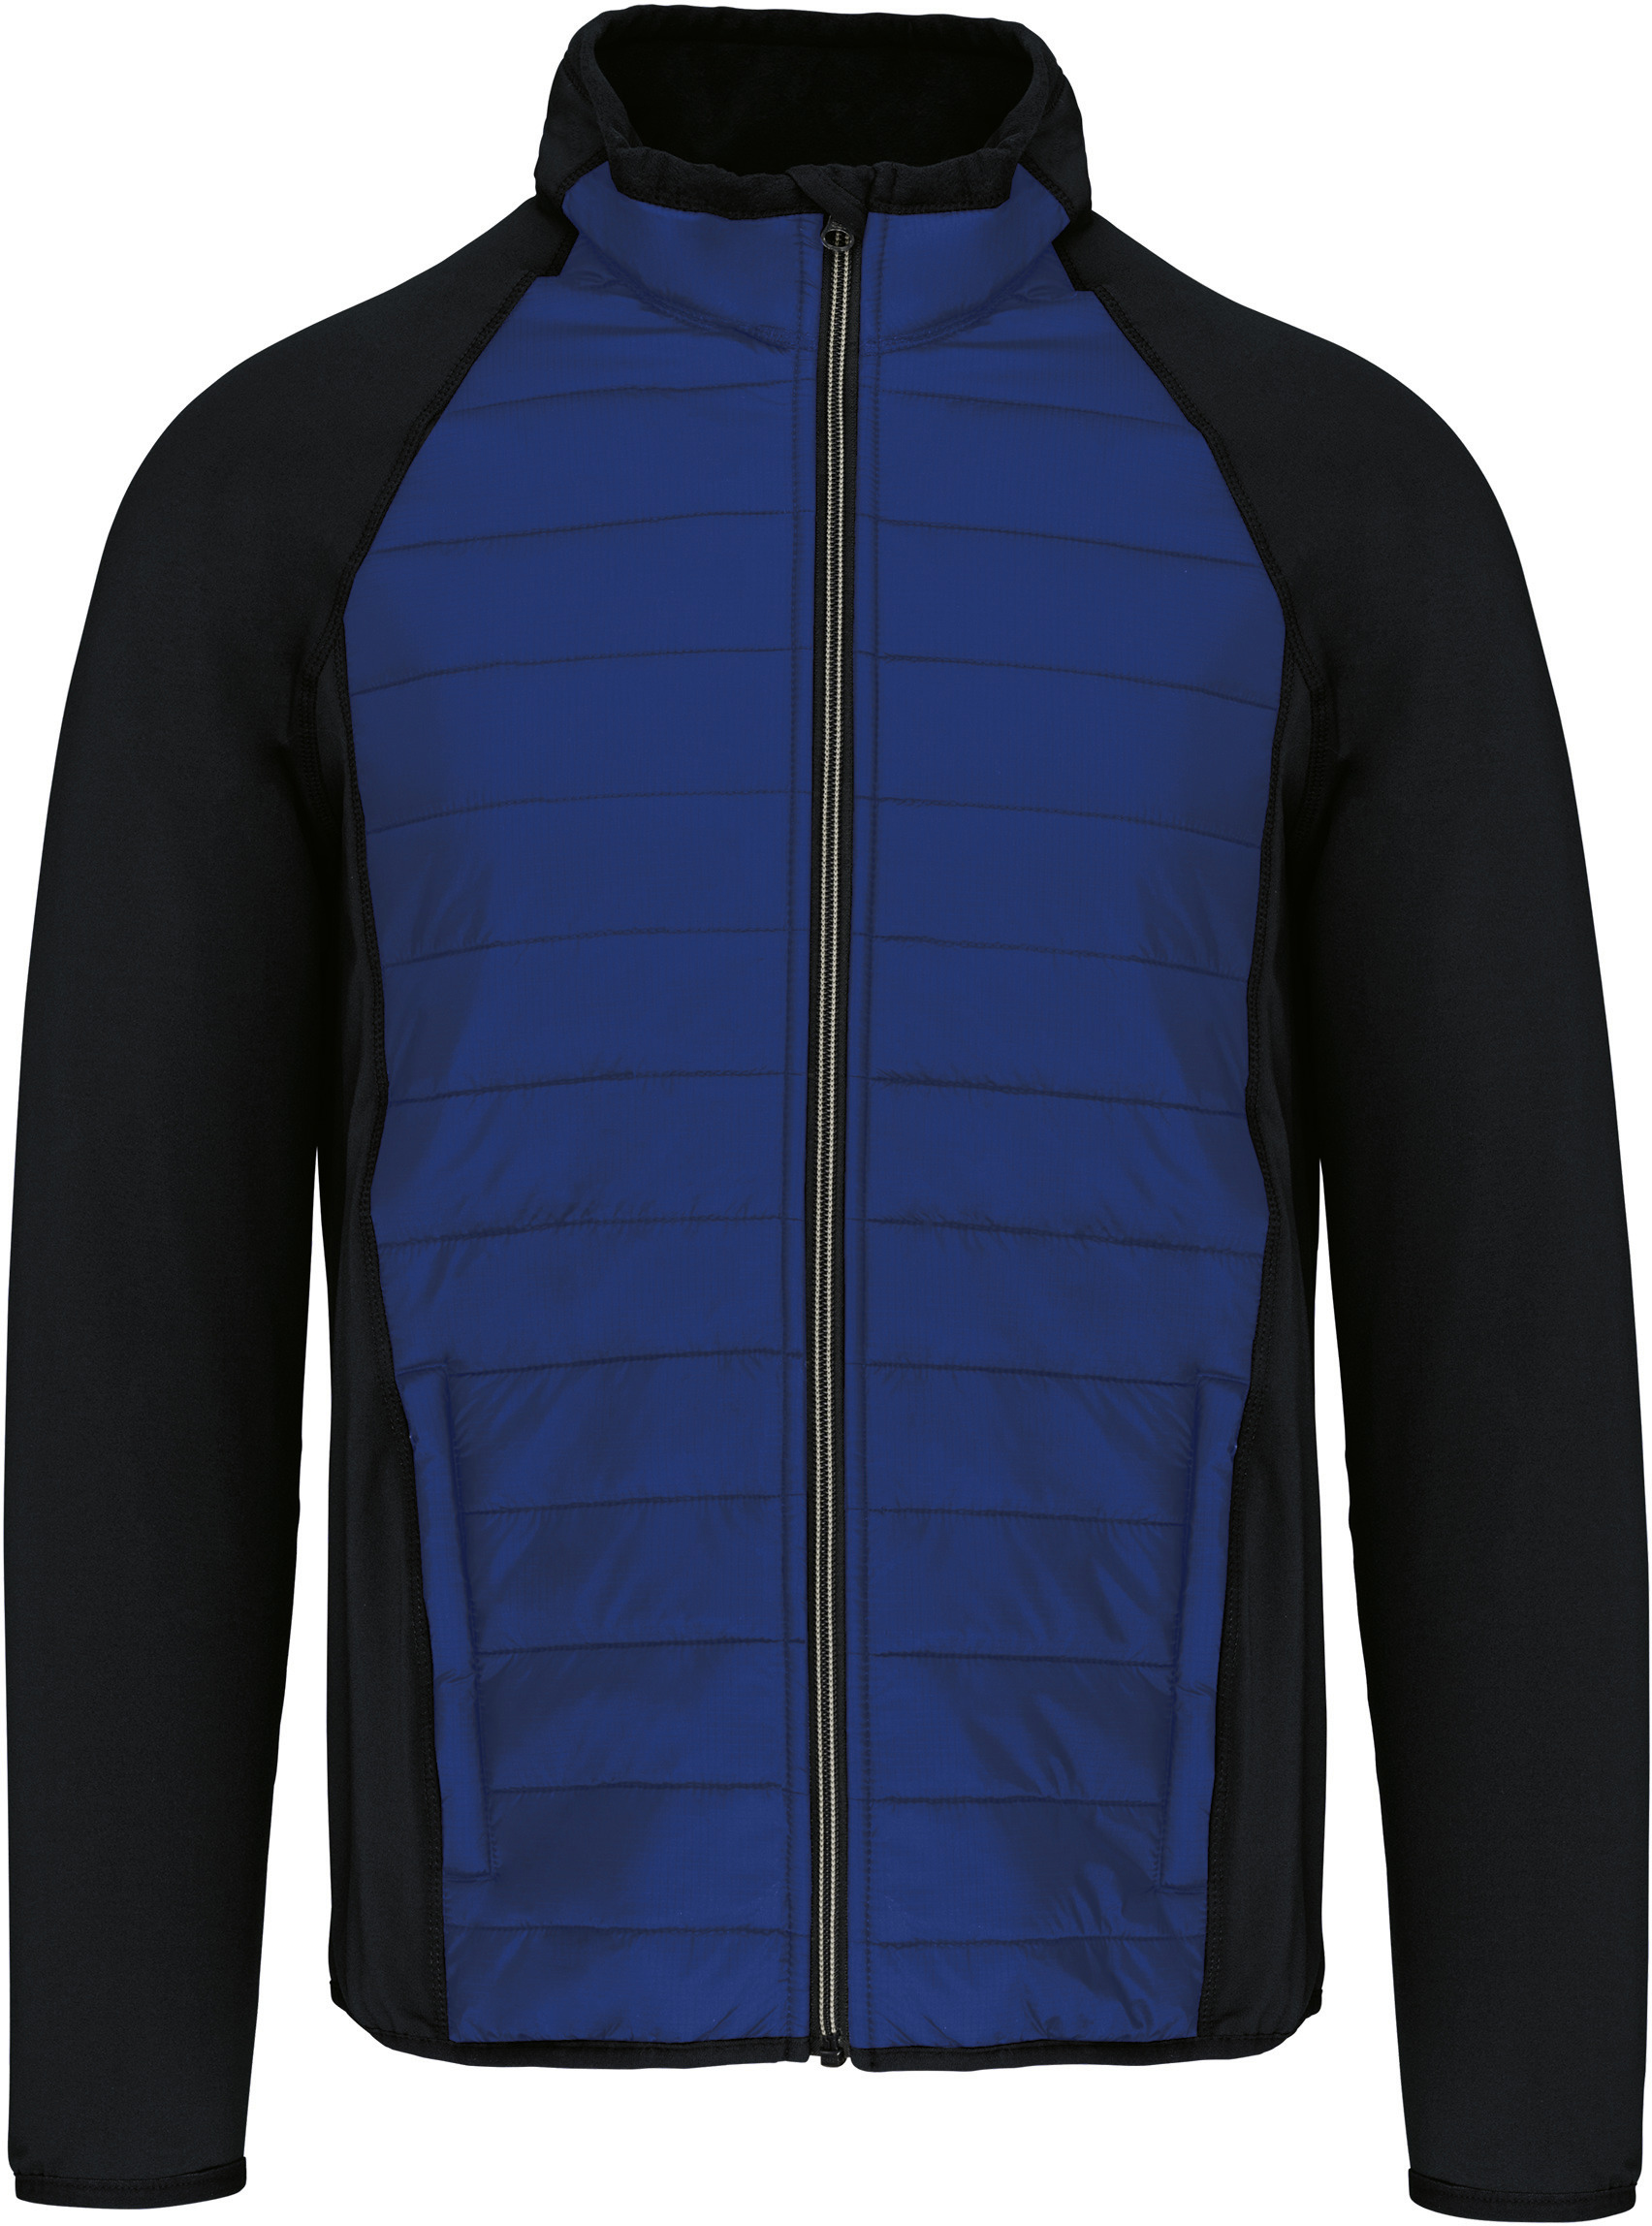 Pánská sportovní bund Dual fabric Barva: modrá-černá, Velikost: XL